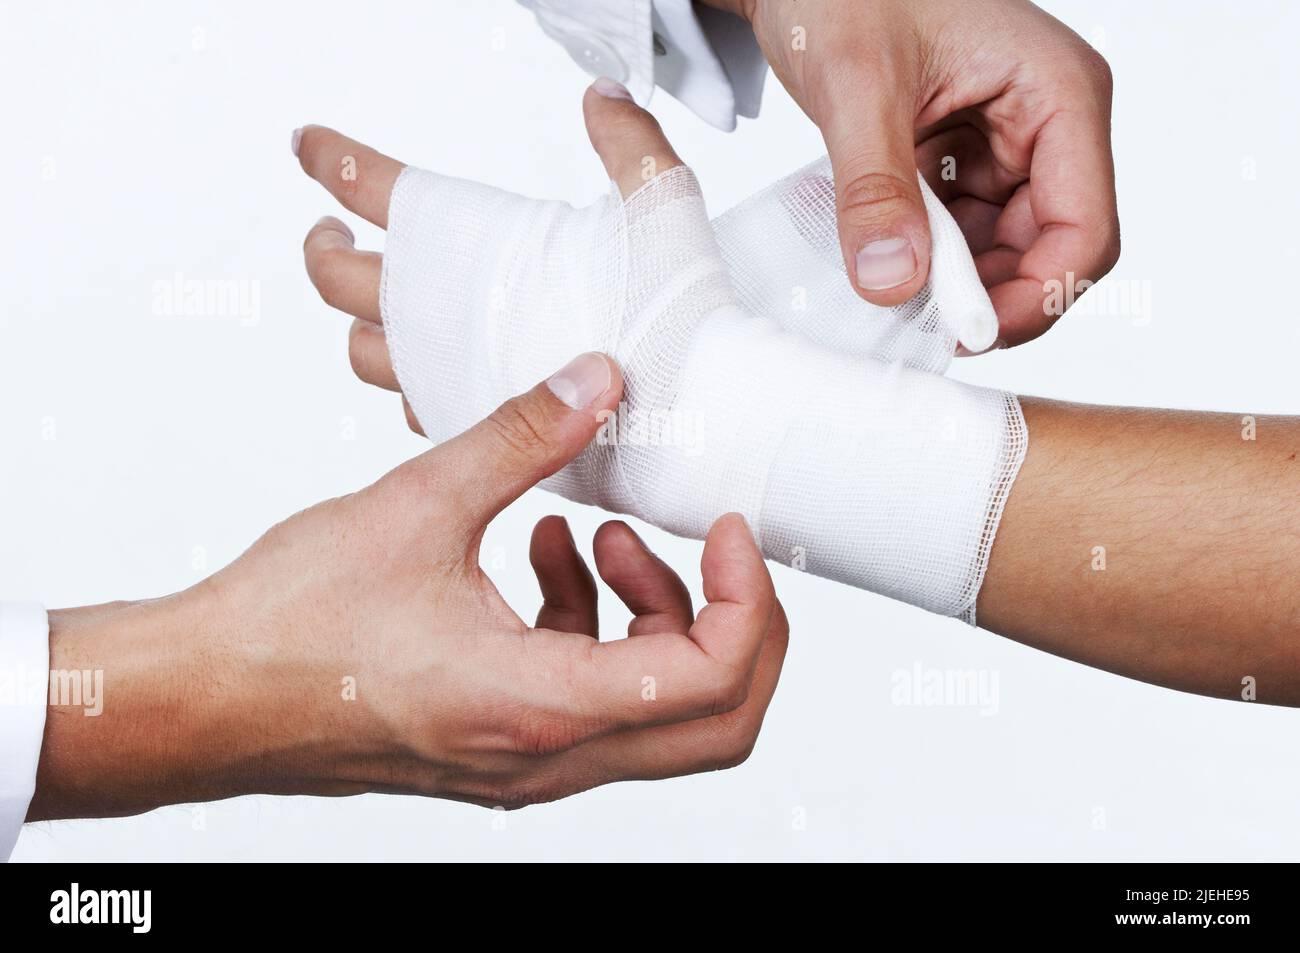 Der Arm einer Frau wird im Krankenhaus verbundden, Handgelenk verstaucht Foto Stock